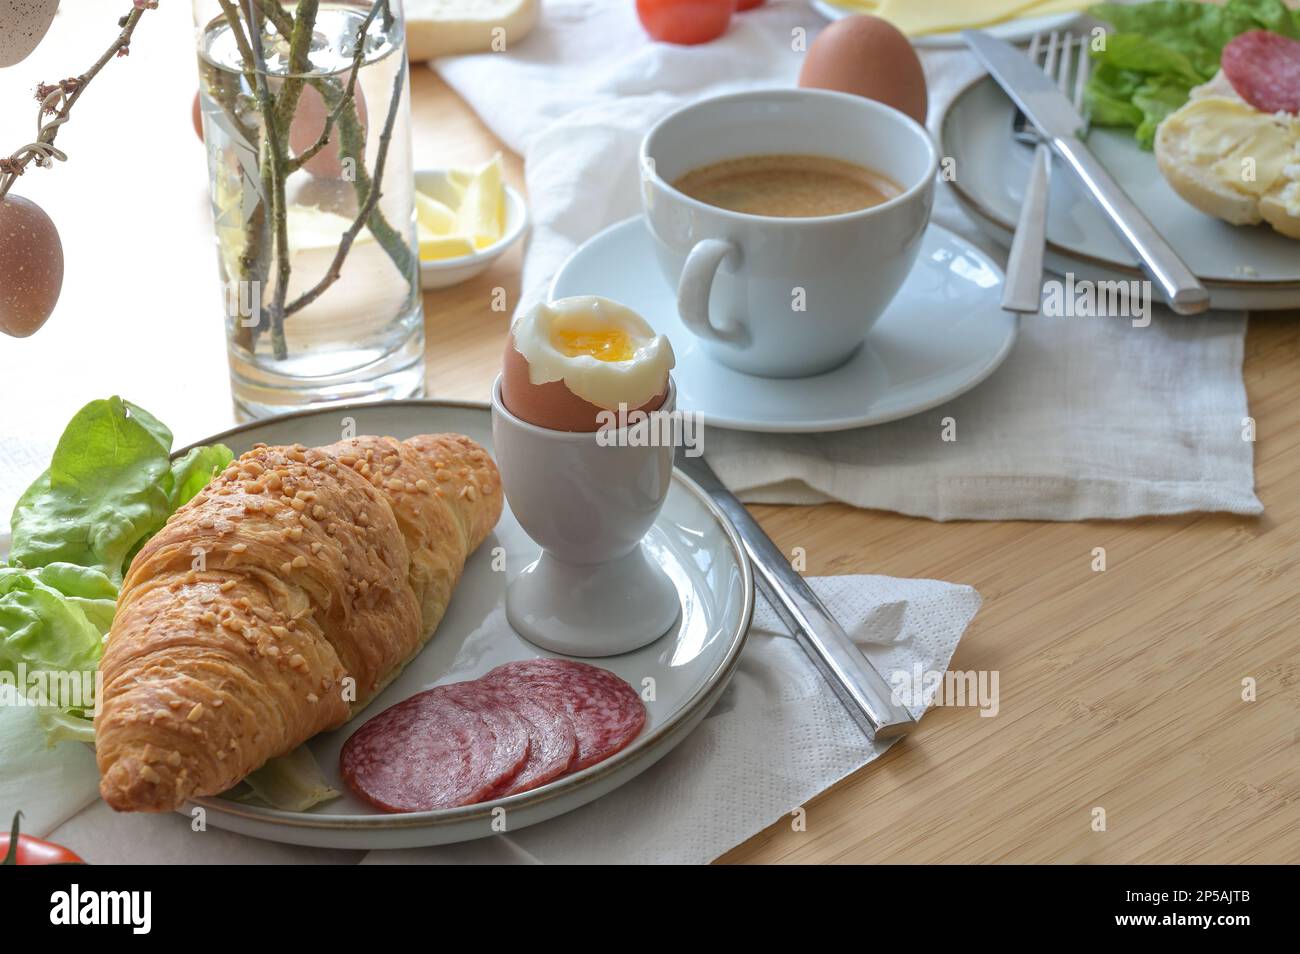 Frühstück oder Brunch mit Croissant, gekochtem Ei, Wurst, Käse und Kaffee auf leichten Servietten und einem Holztisch, ausgewählter Fokus, schmale Feldtiefe Stockfoto